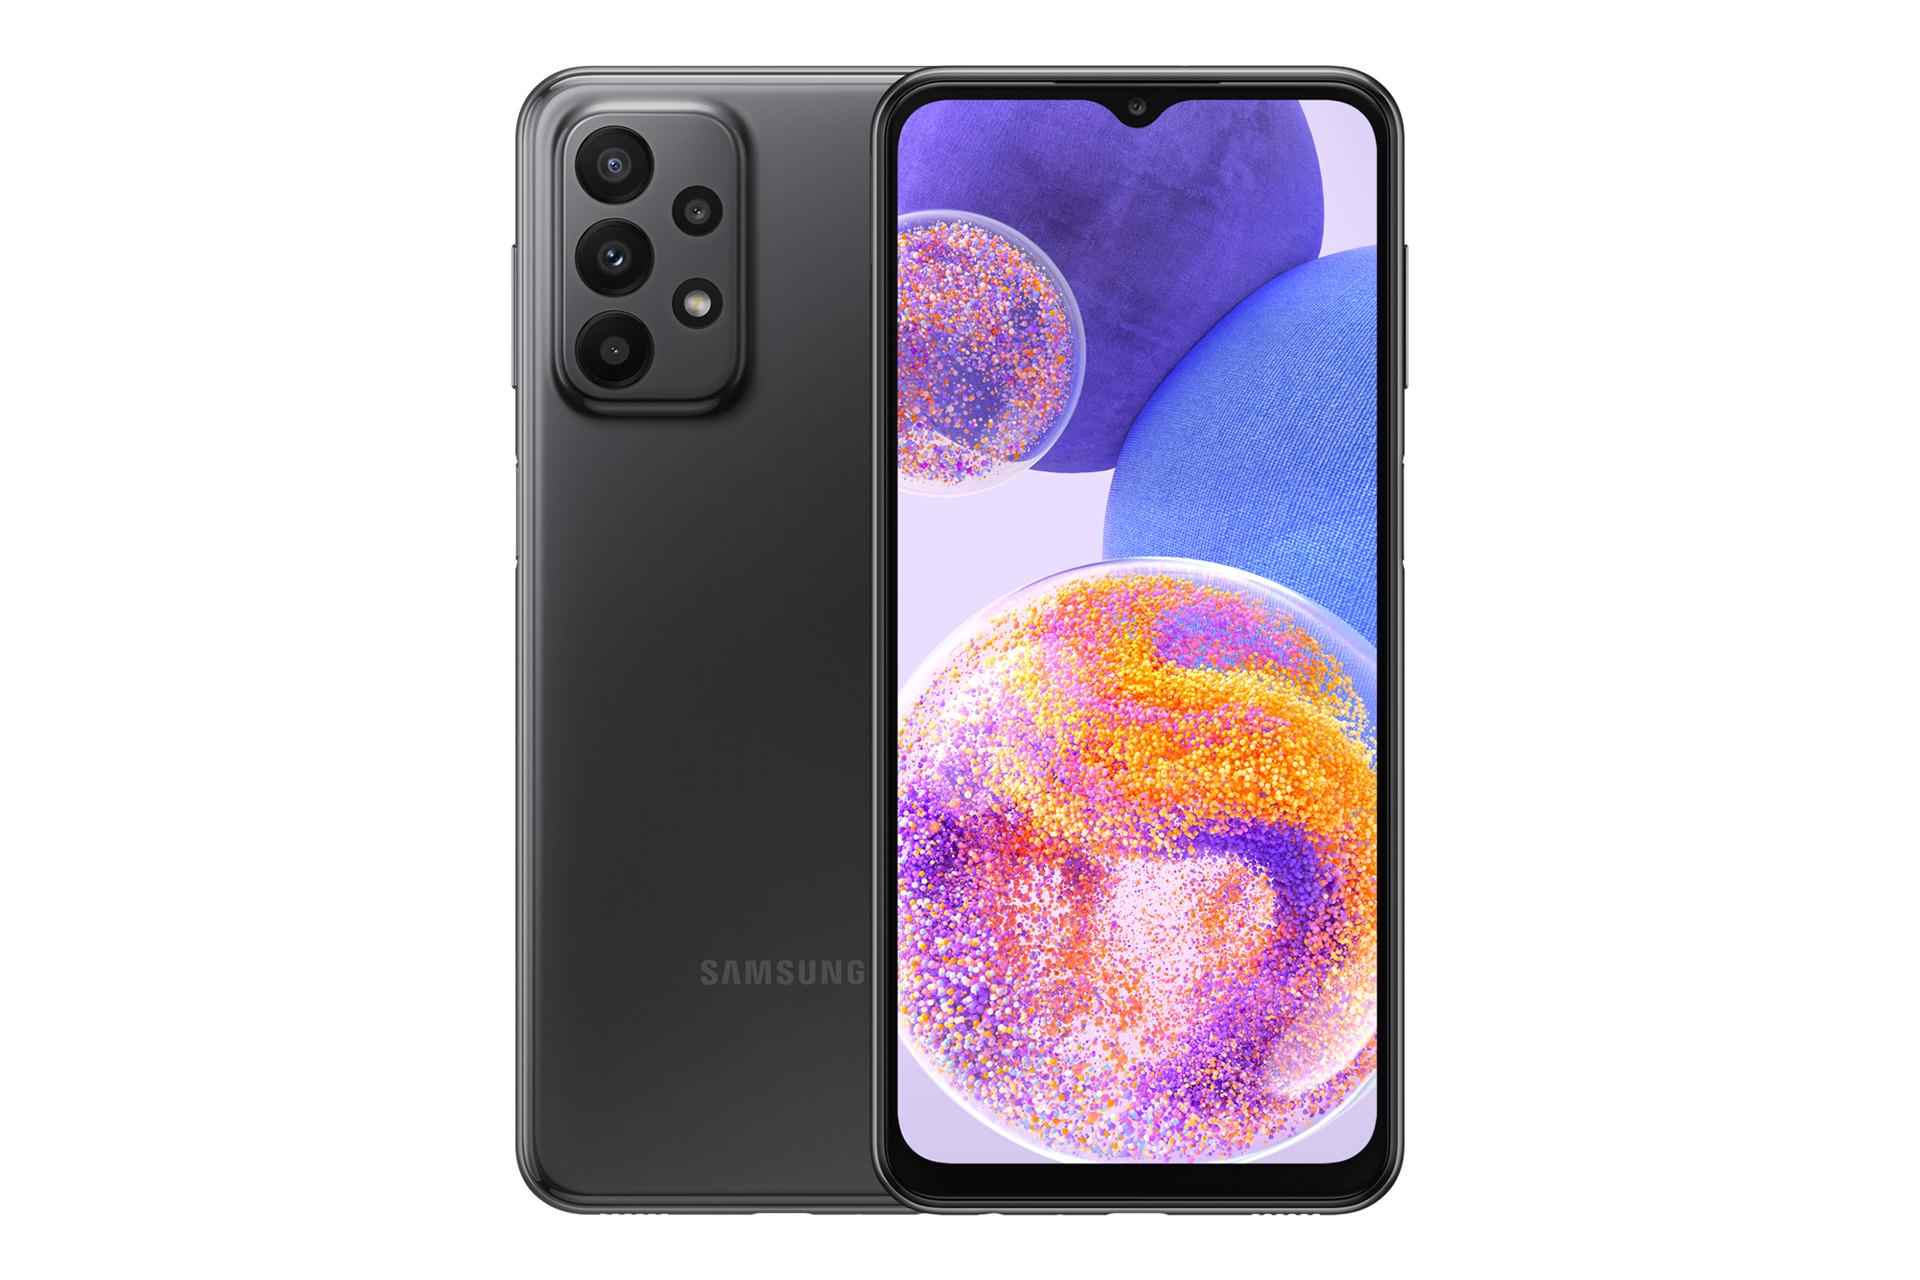 نمای کلی گوشی موبایل گلکسی A23 سامسونگ / Samsung Galaxy A23 با نمایشگر روشن و نمایش لوگو و دوربین های پنل پشت رنگ مشکی